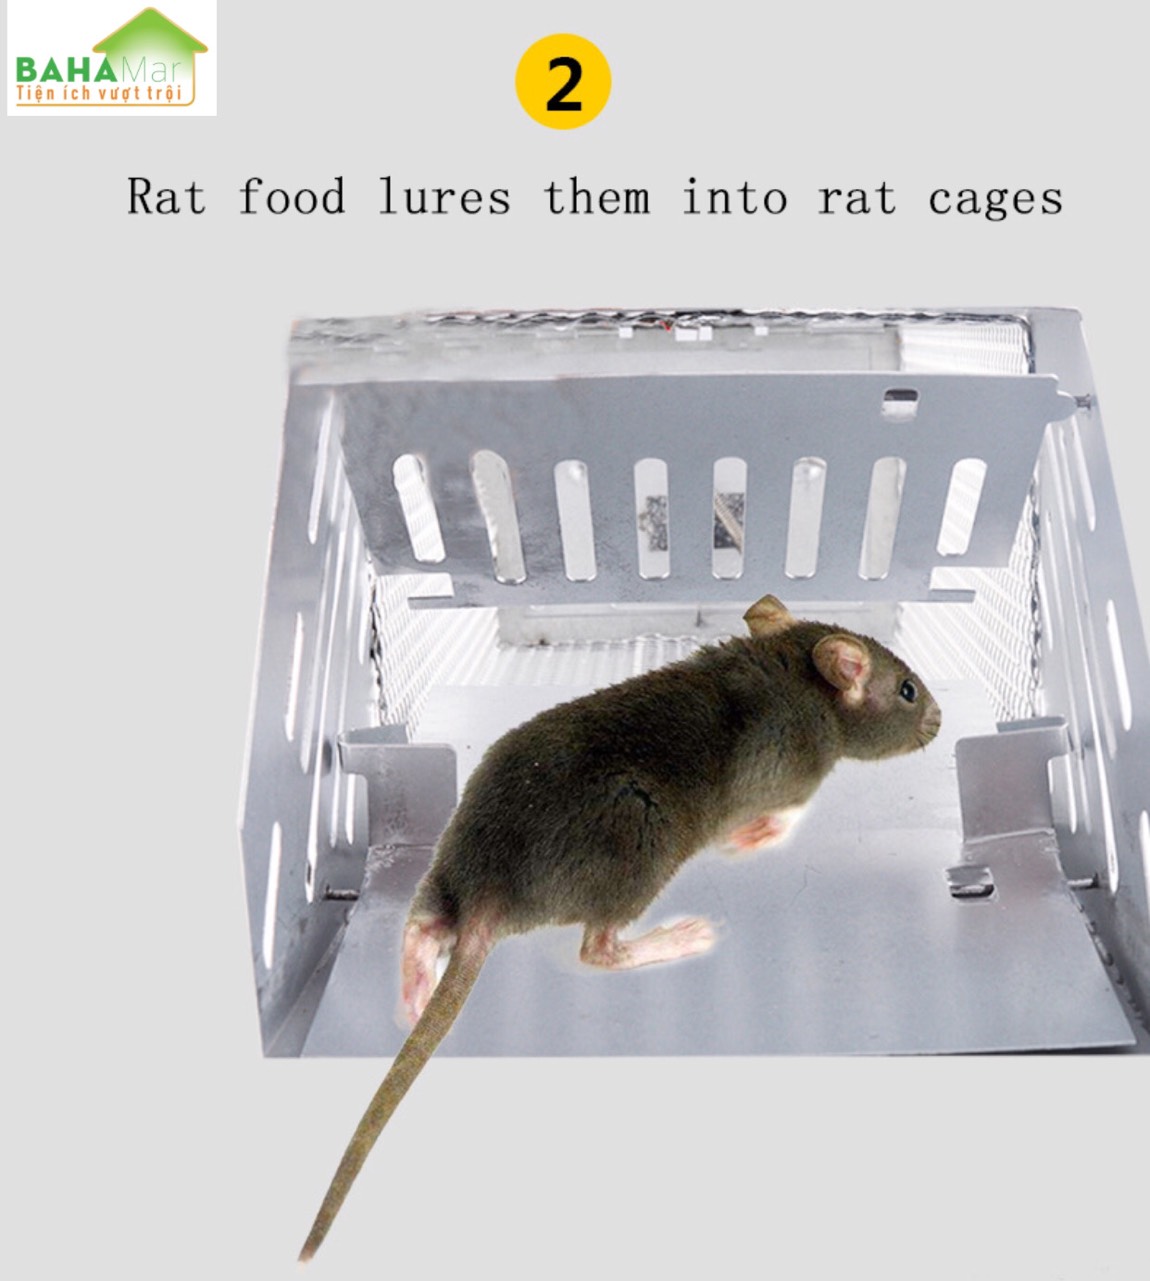 BẪY CHUỘT LIÊN HOÀN TÁI SỬ DỤNG - BẮT CHUỘT TỰ ĐỘNG AN TOÀN VỚI NGƯỜI DÙNG &quot;BAHAMAR&quot; Có thể bắt một số chuột tại một thời gian, rất khó khăn cho chuột trốn thoát khi đã vào bẫy